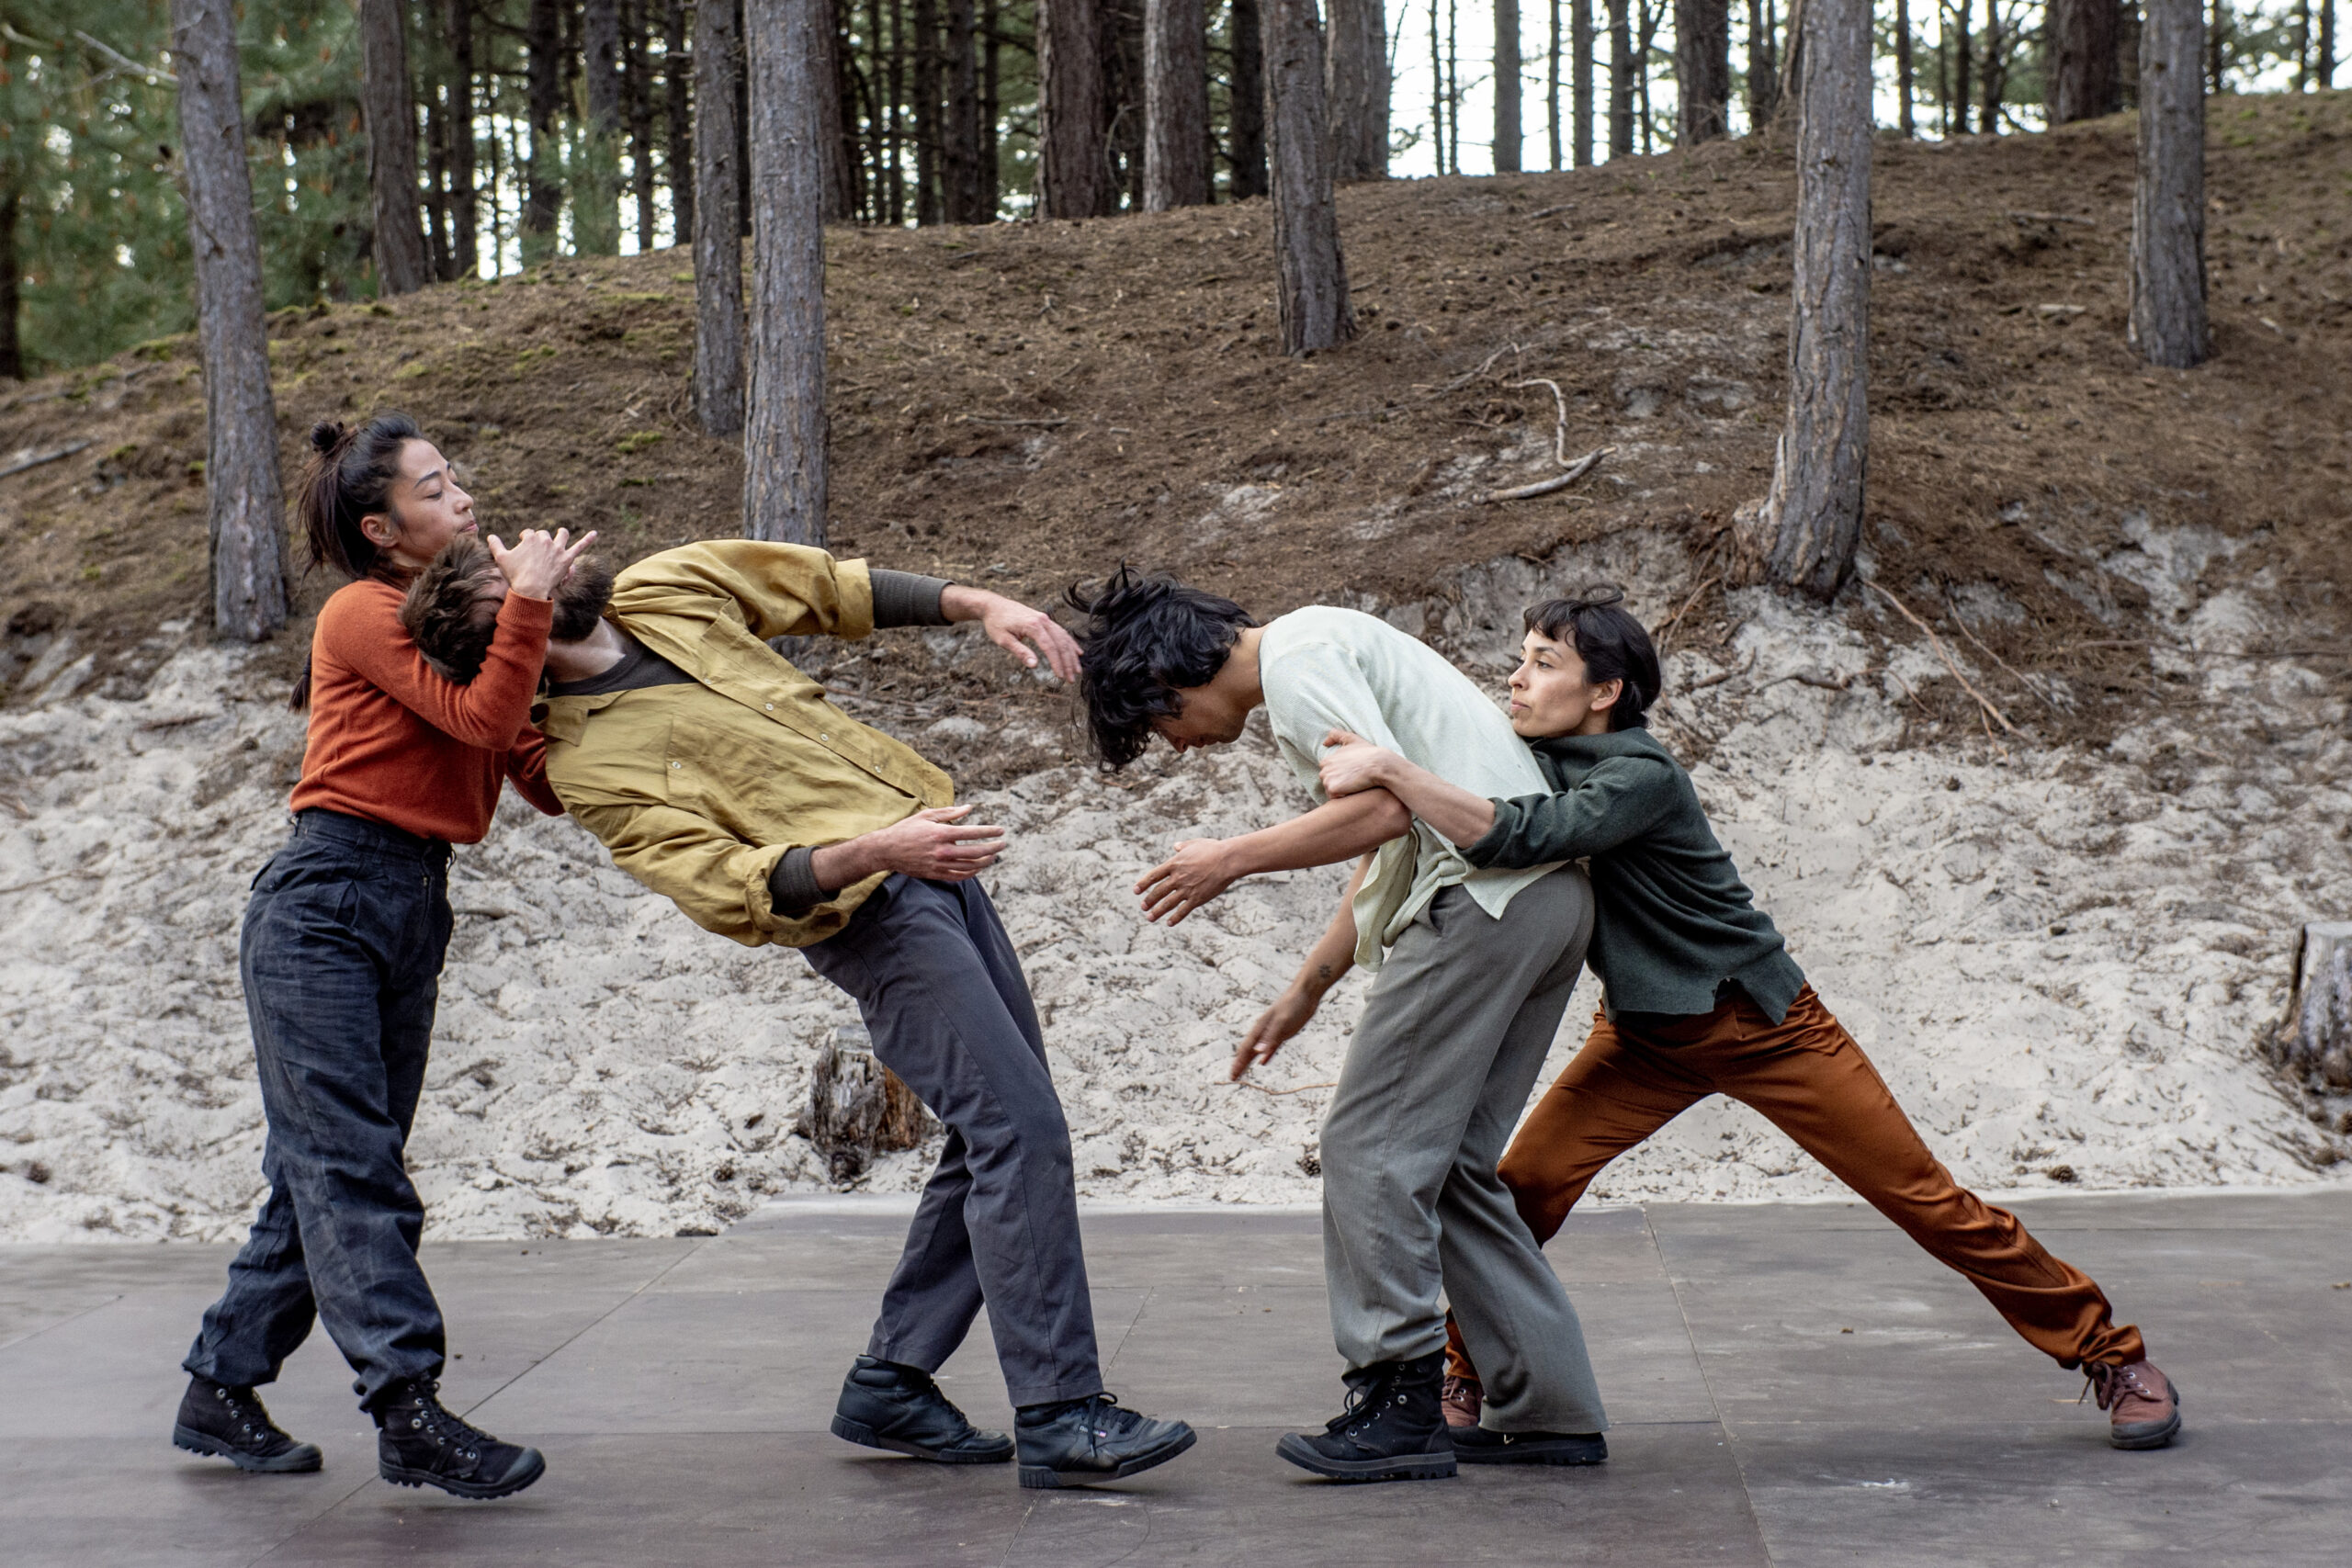 vier dansers dansen in een zandafgraving in het bos, een voorstellingsbeeld uit de dansvoorstelling Hush van theatergezelschap De Dansers, Oerol 2023